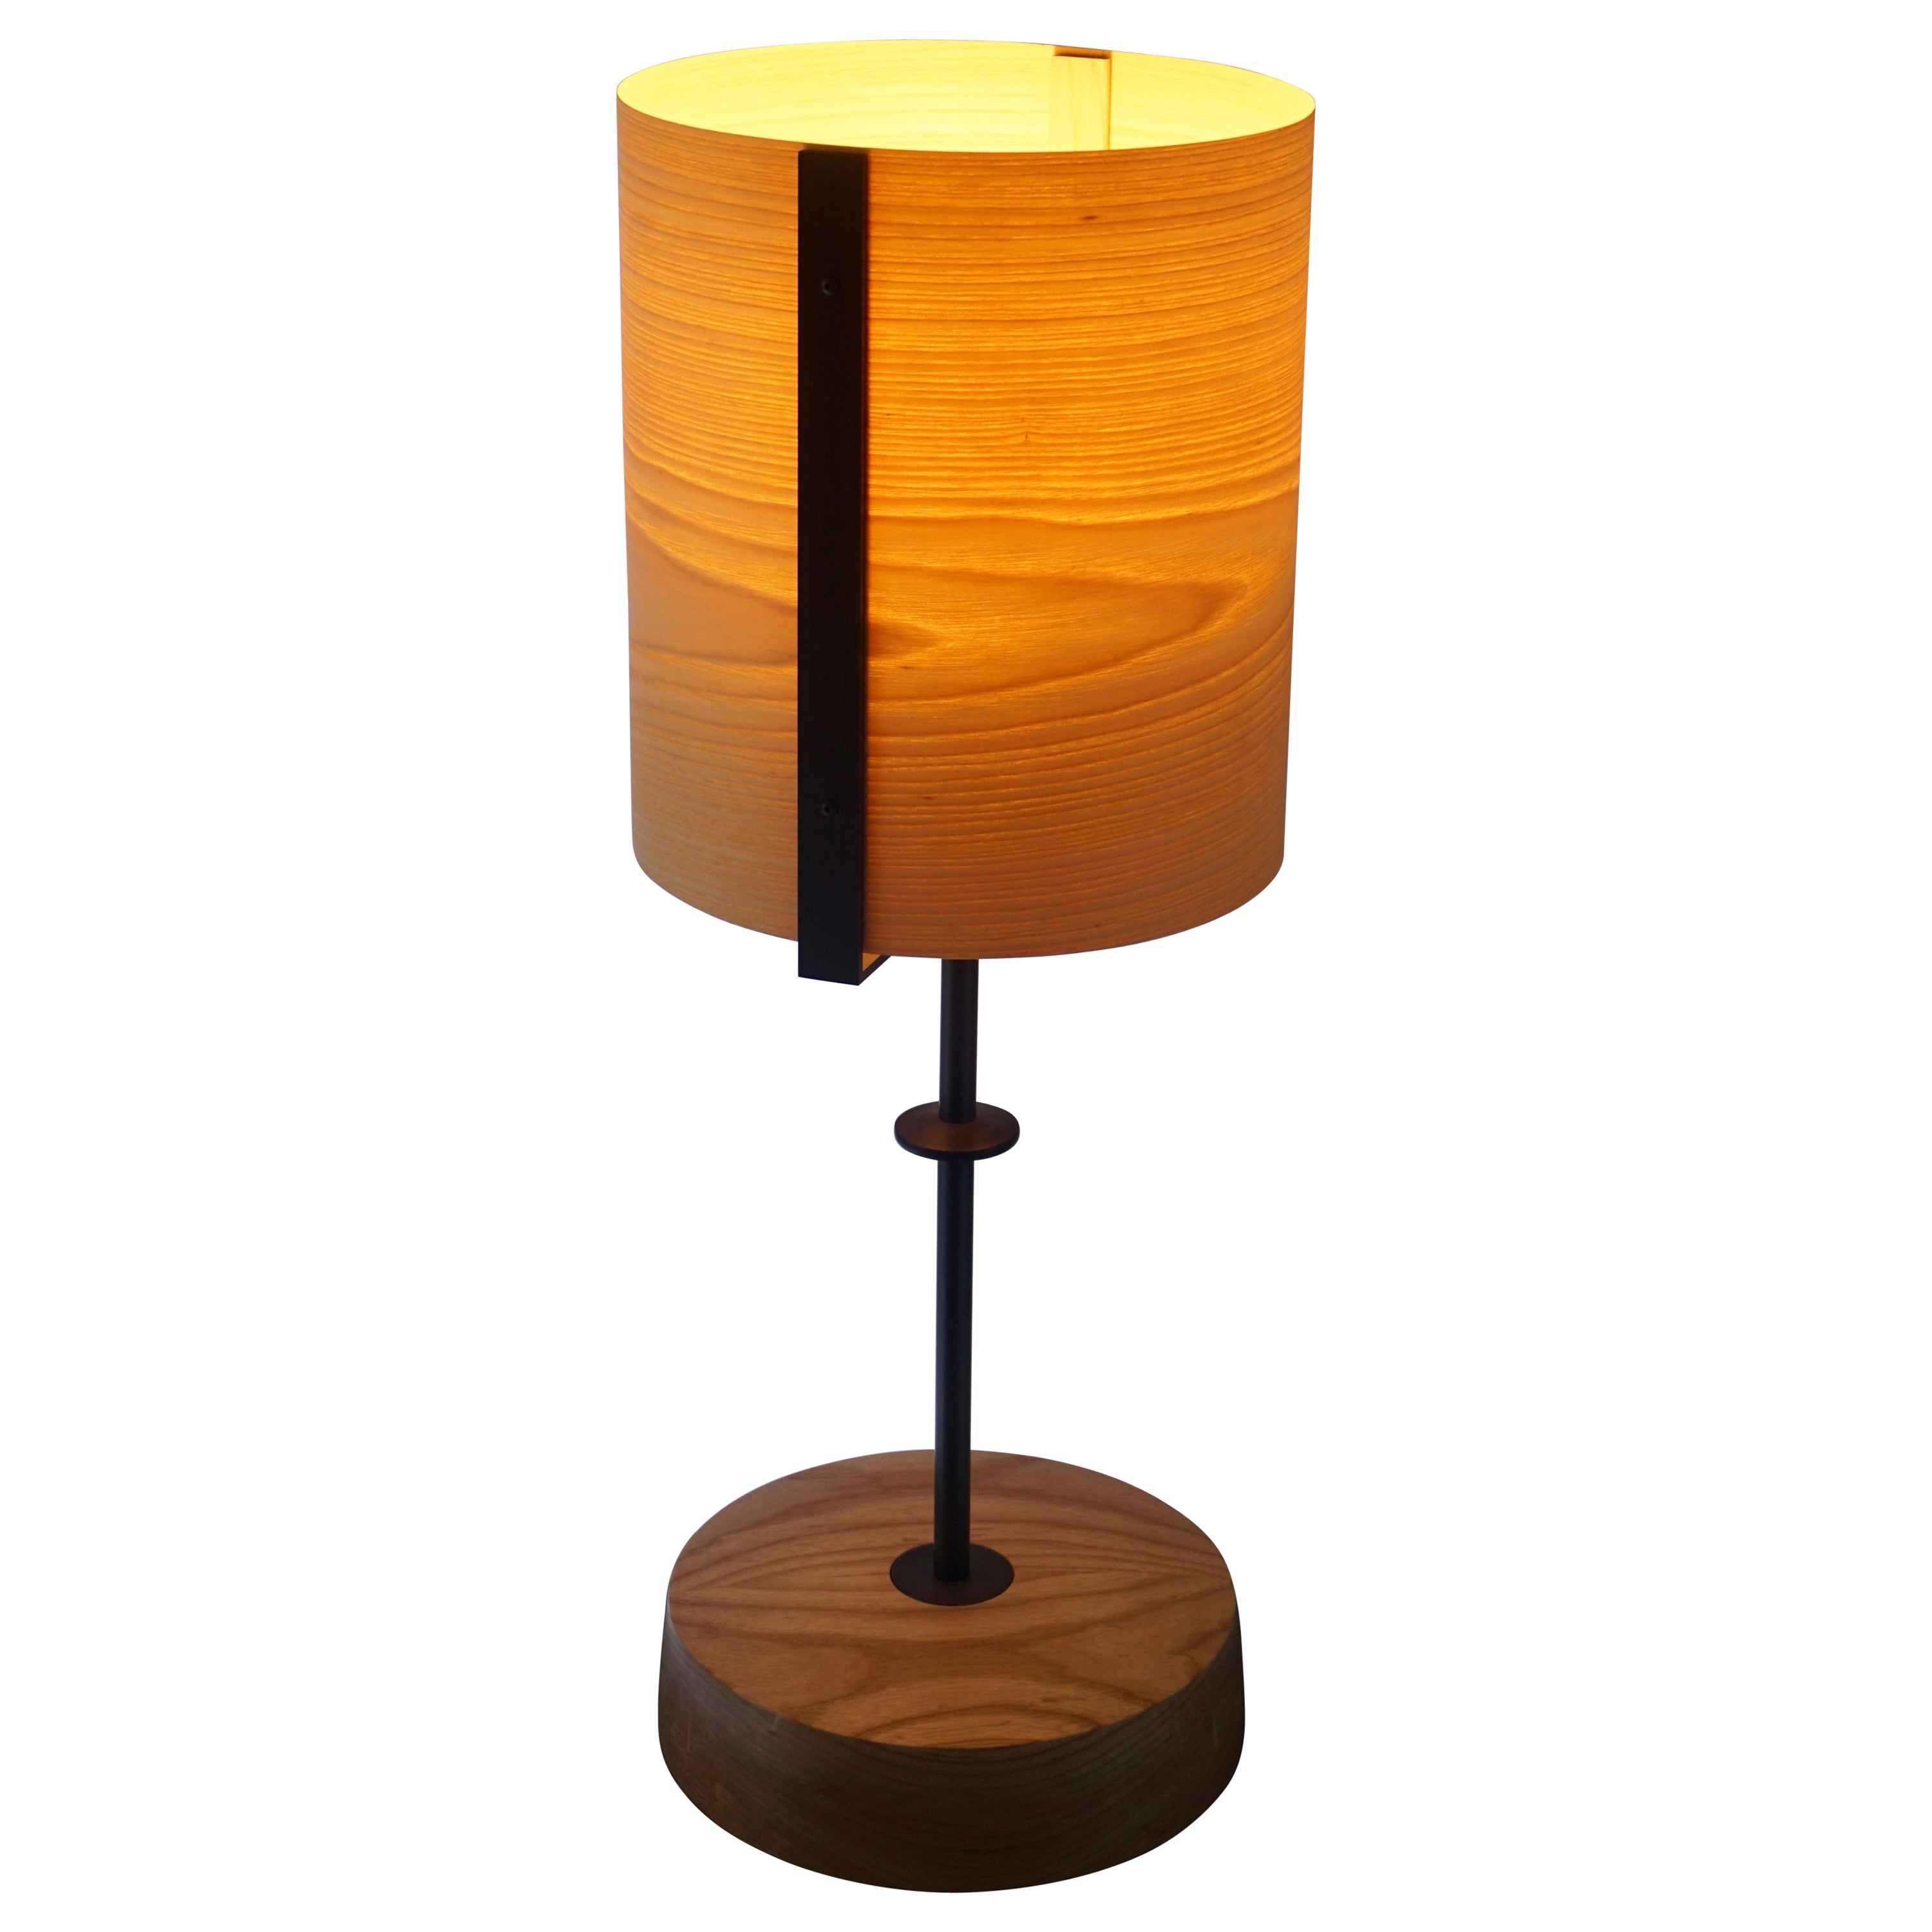 Ash Wood Veneer Table Lamp #5 with Blackened Bronze Frame